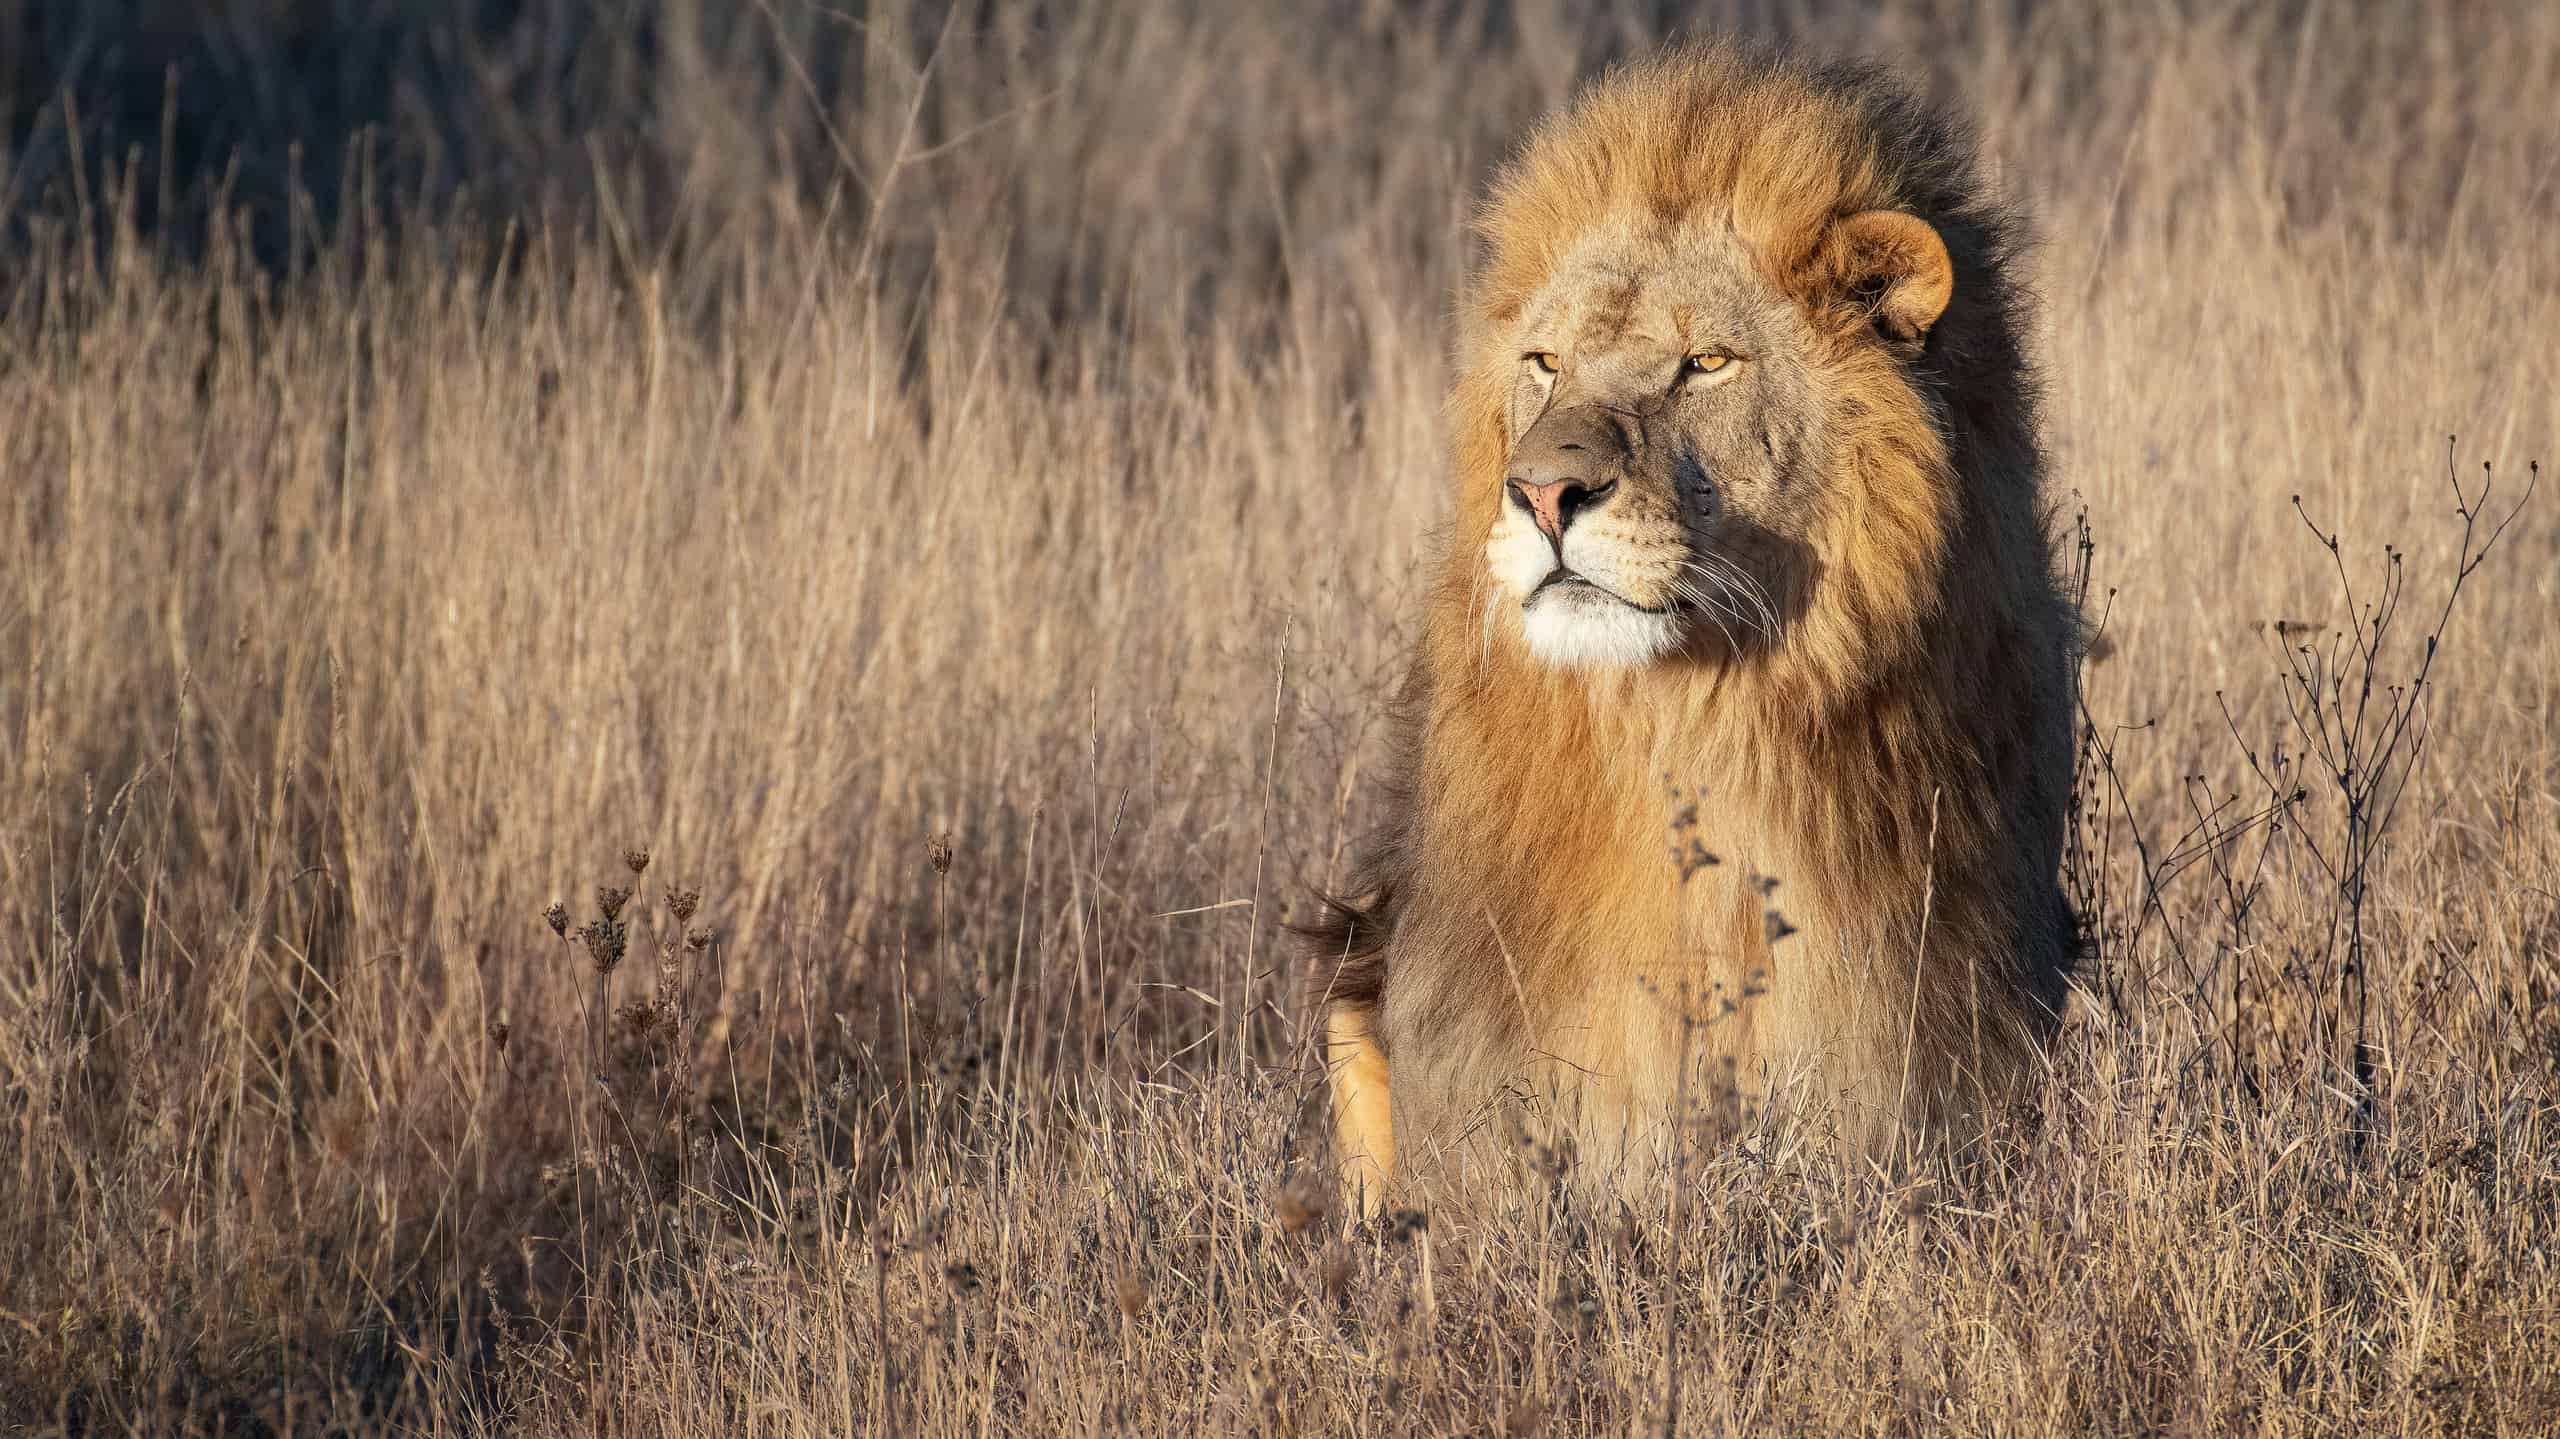 Lion king in grass portrait Wildlife animal